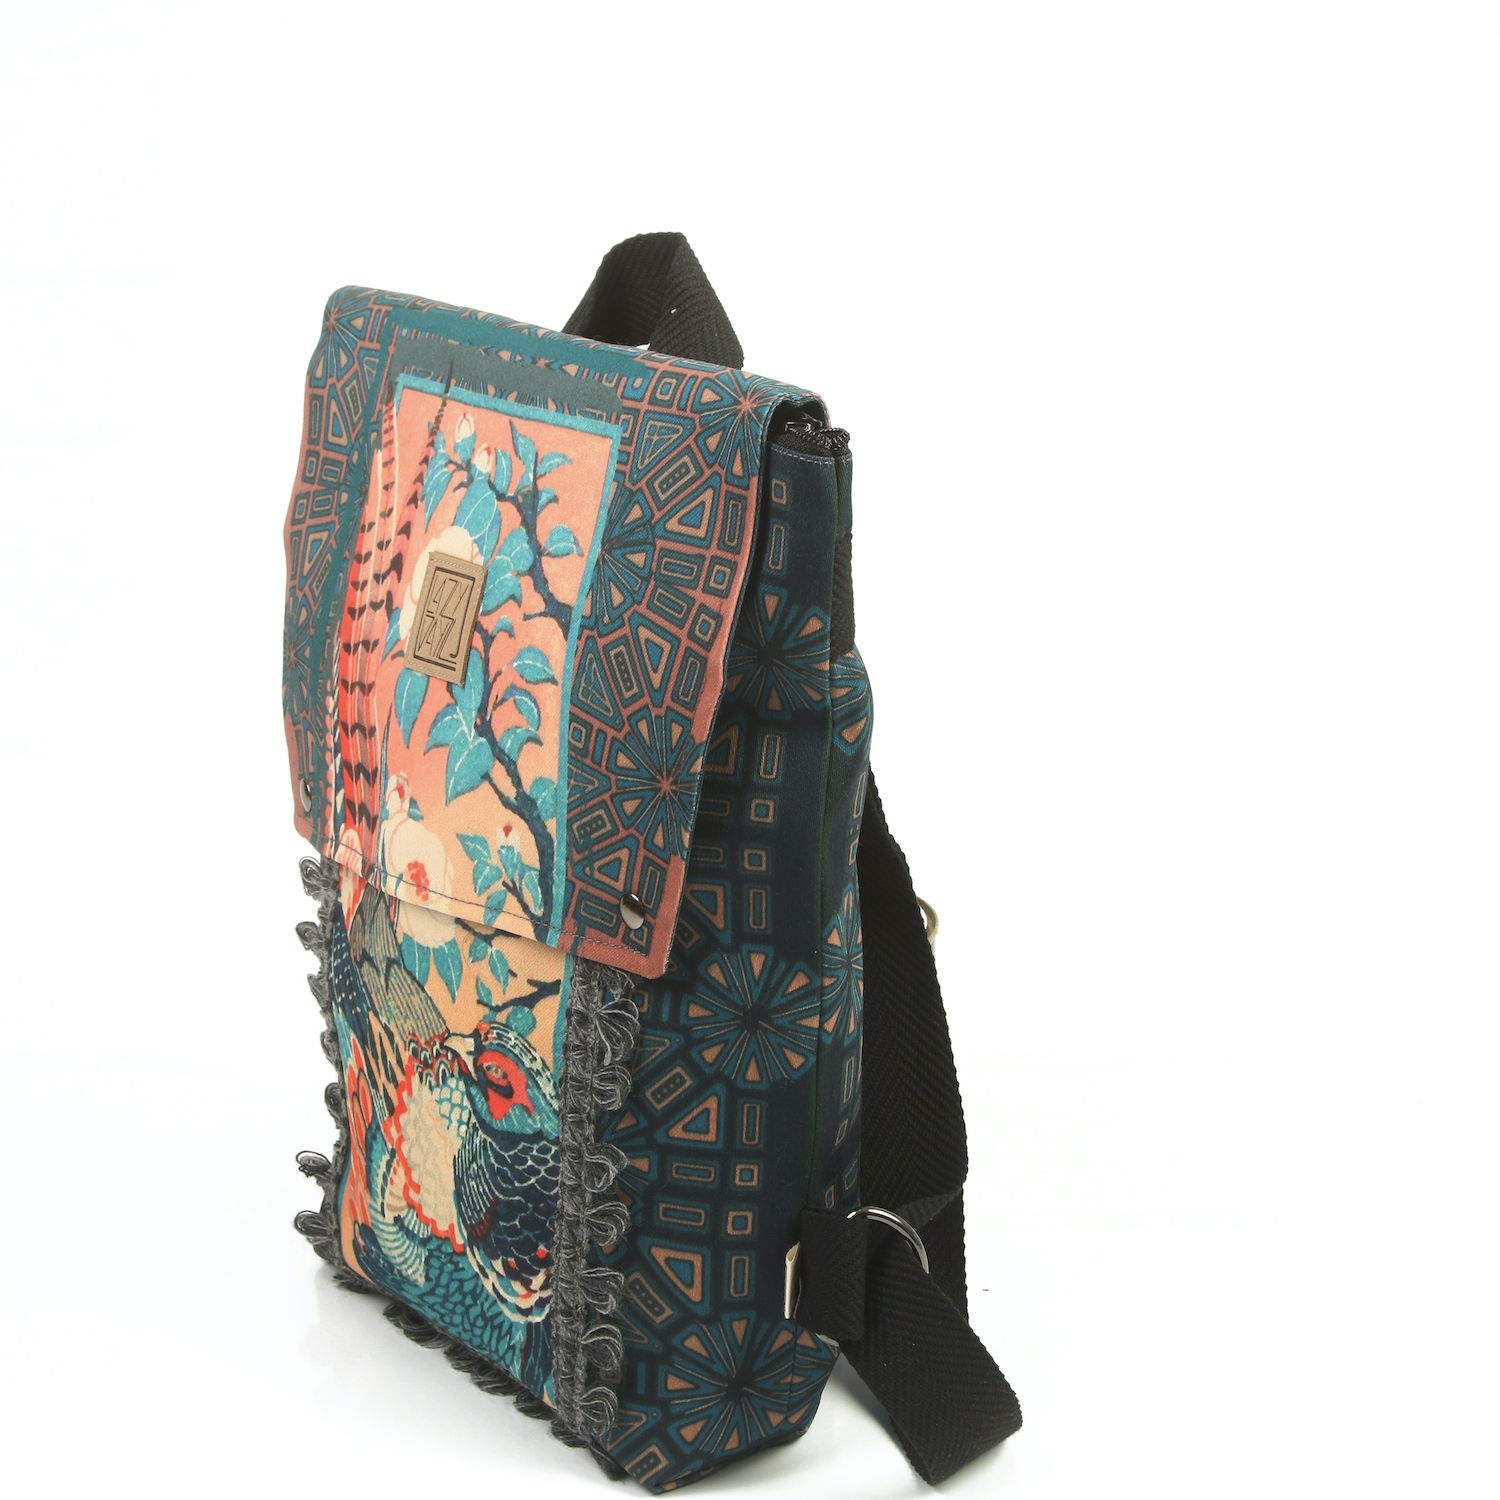 LazyDayz-Designs-Backpack-γυναικείος-σάκος-πλάτης-χειροποίητος-bb0704a